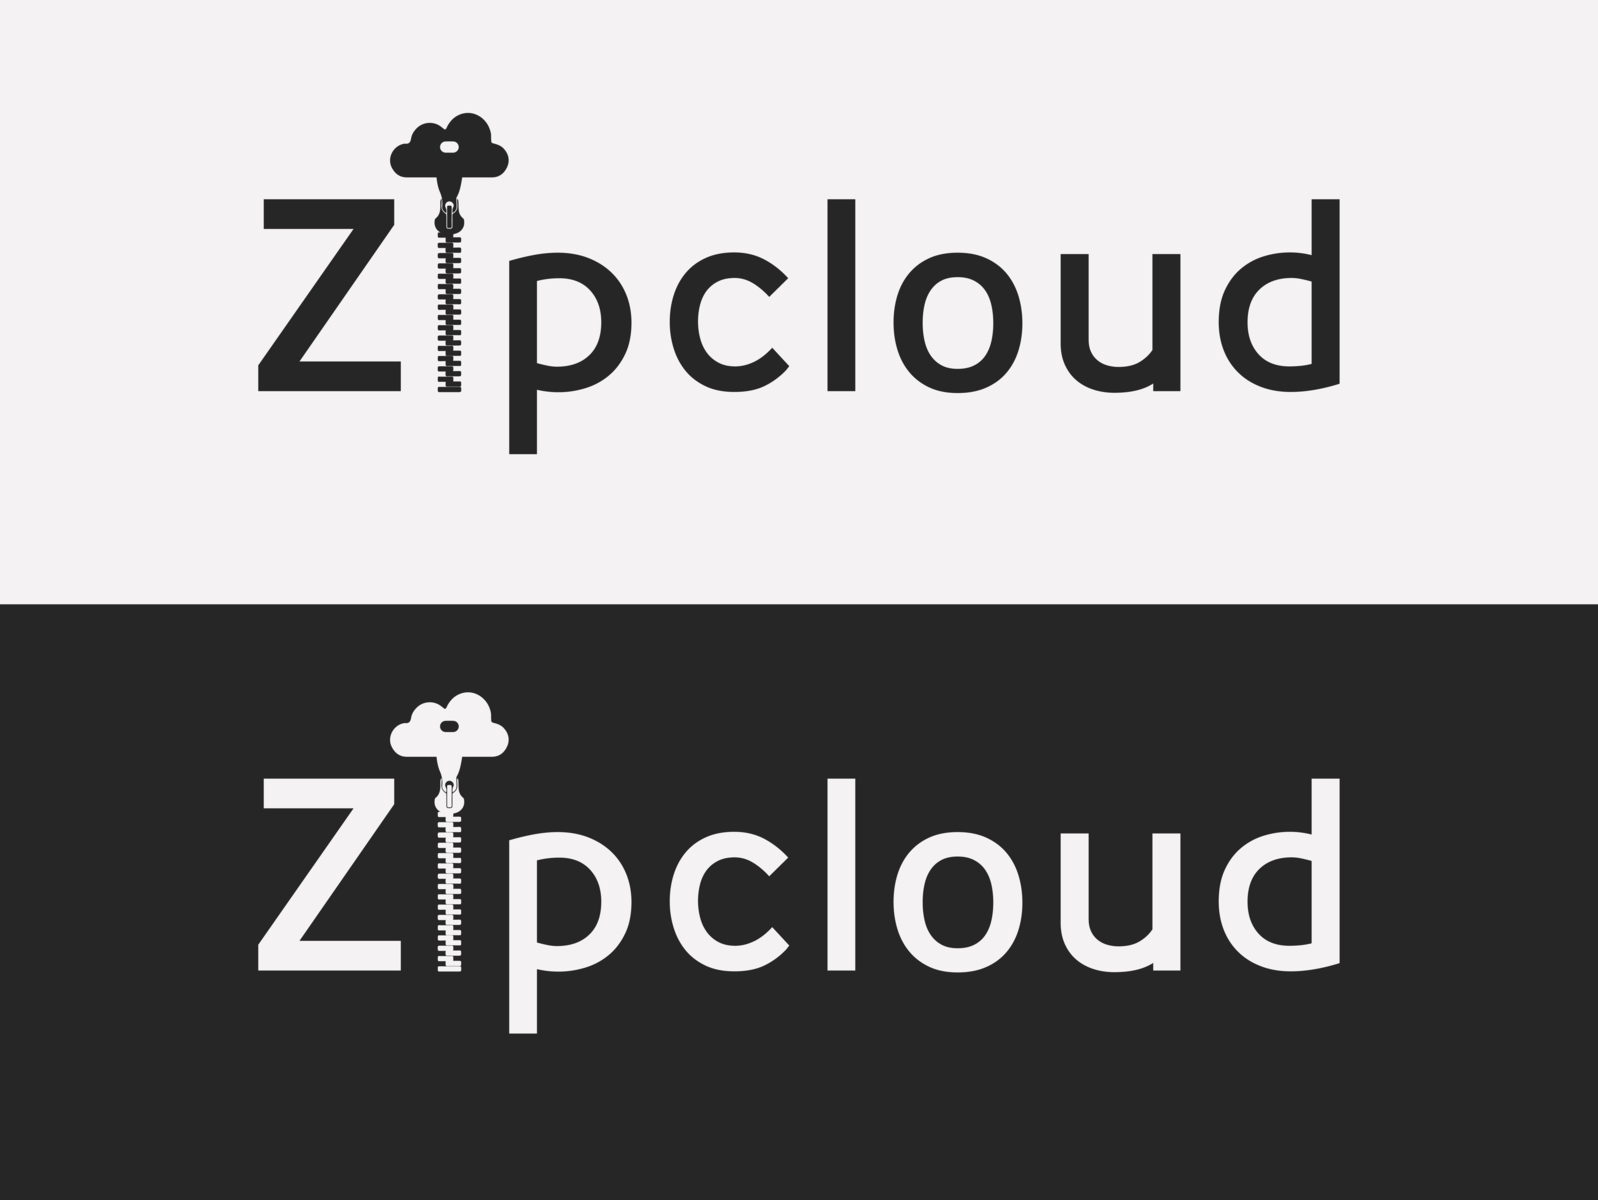 zipcloud com